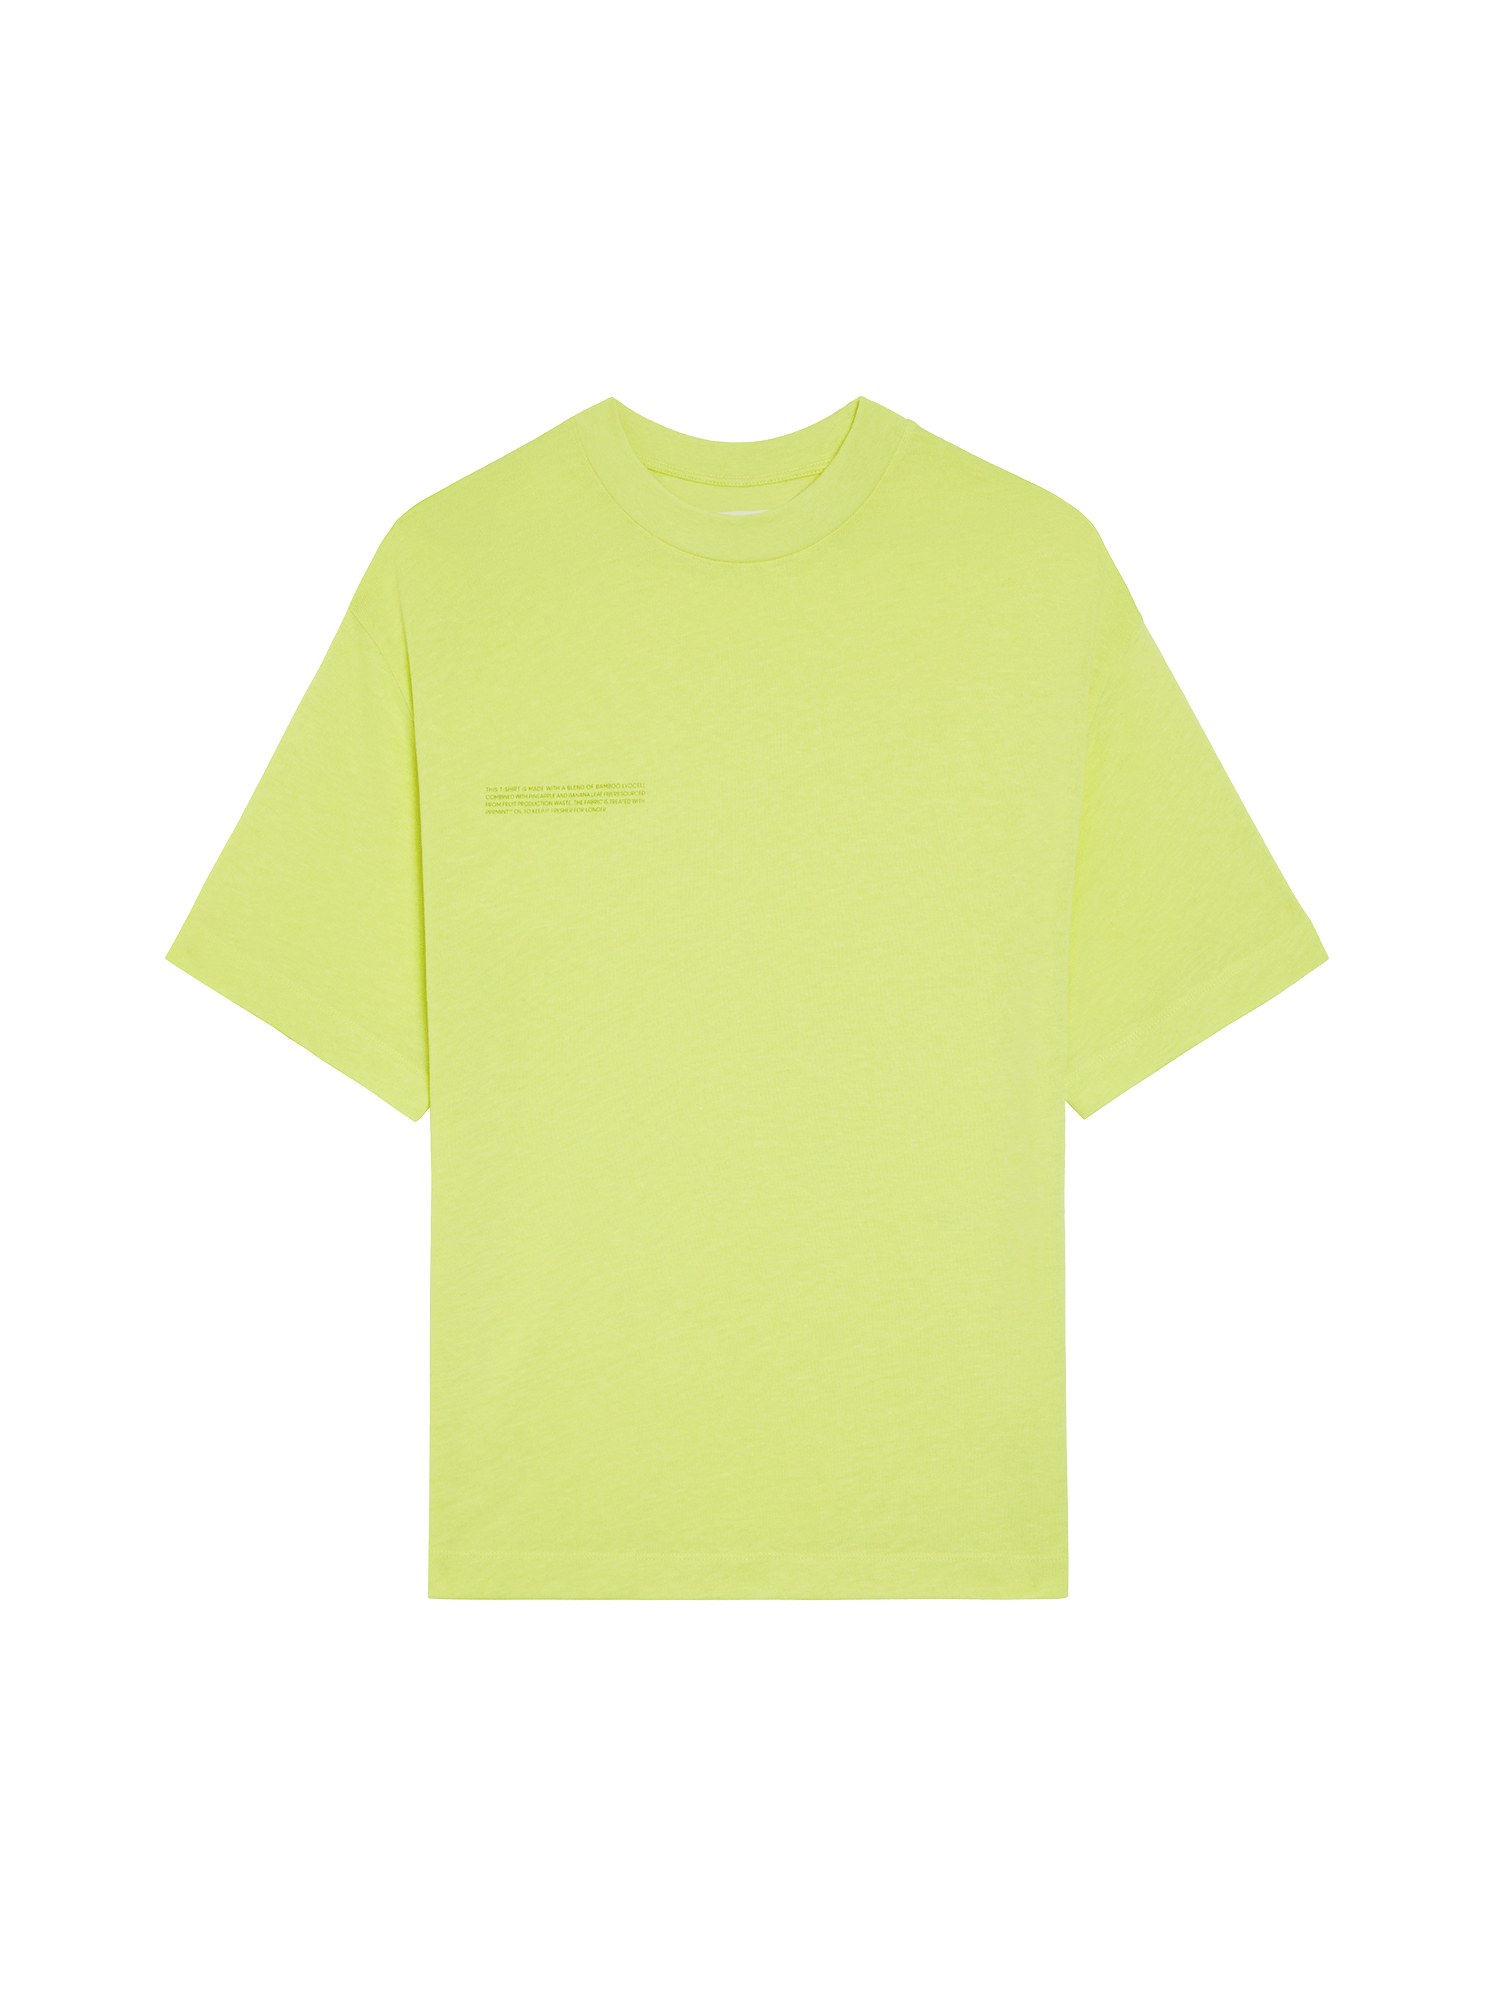 Frutfiber-Skater-T-Shirt-Andes-Green-packshot-3